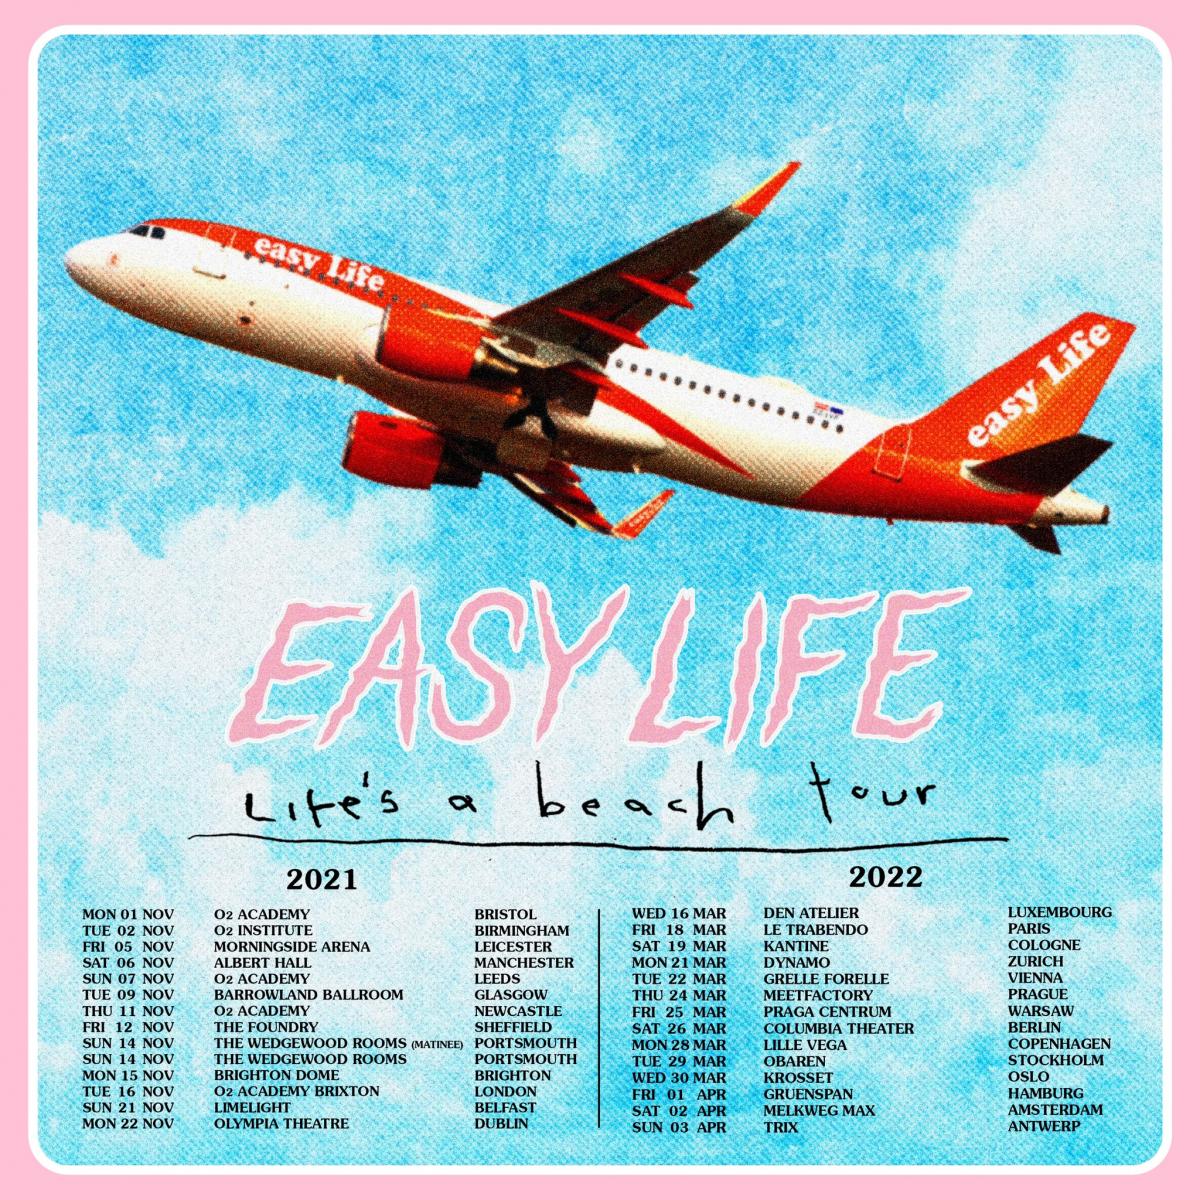 easy life tour dates